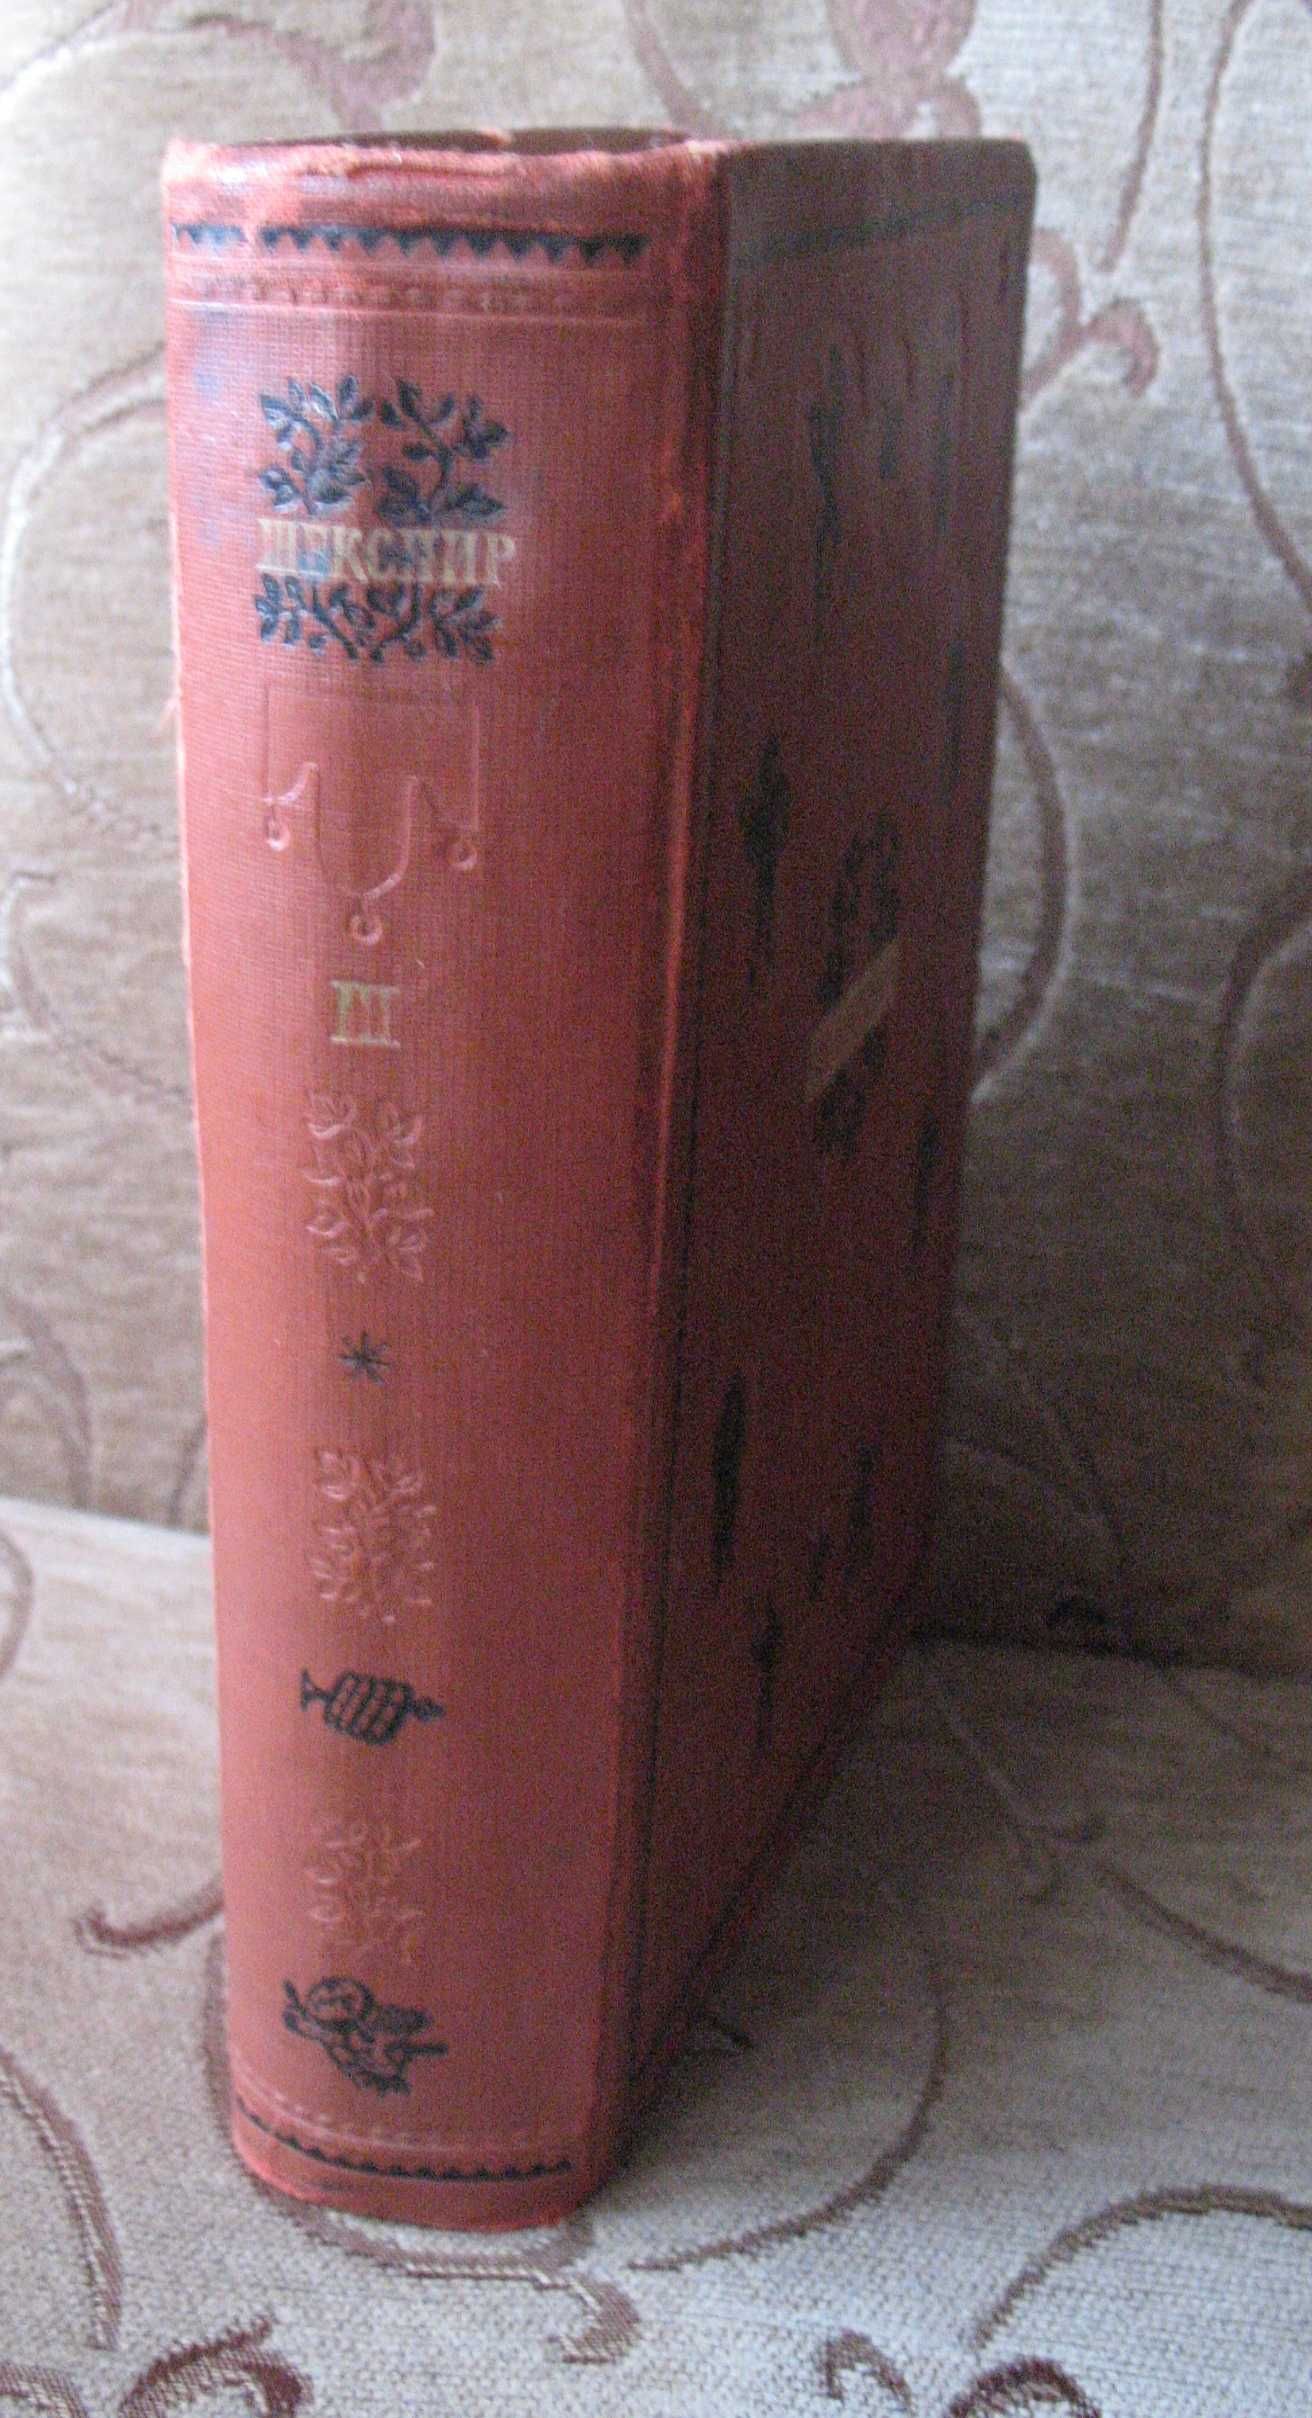 Шекспир В. Избранные сочинения. В 4-х томах. Том III. 1940 г.